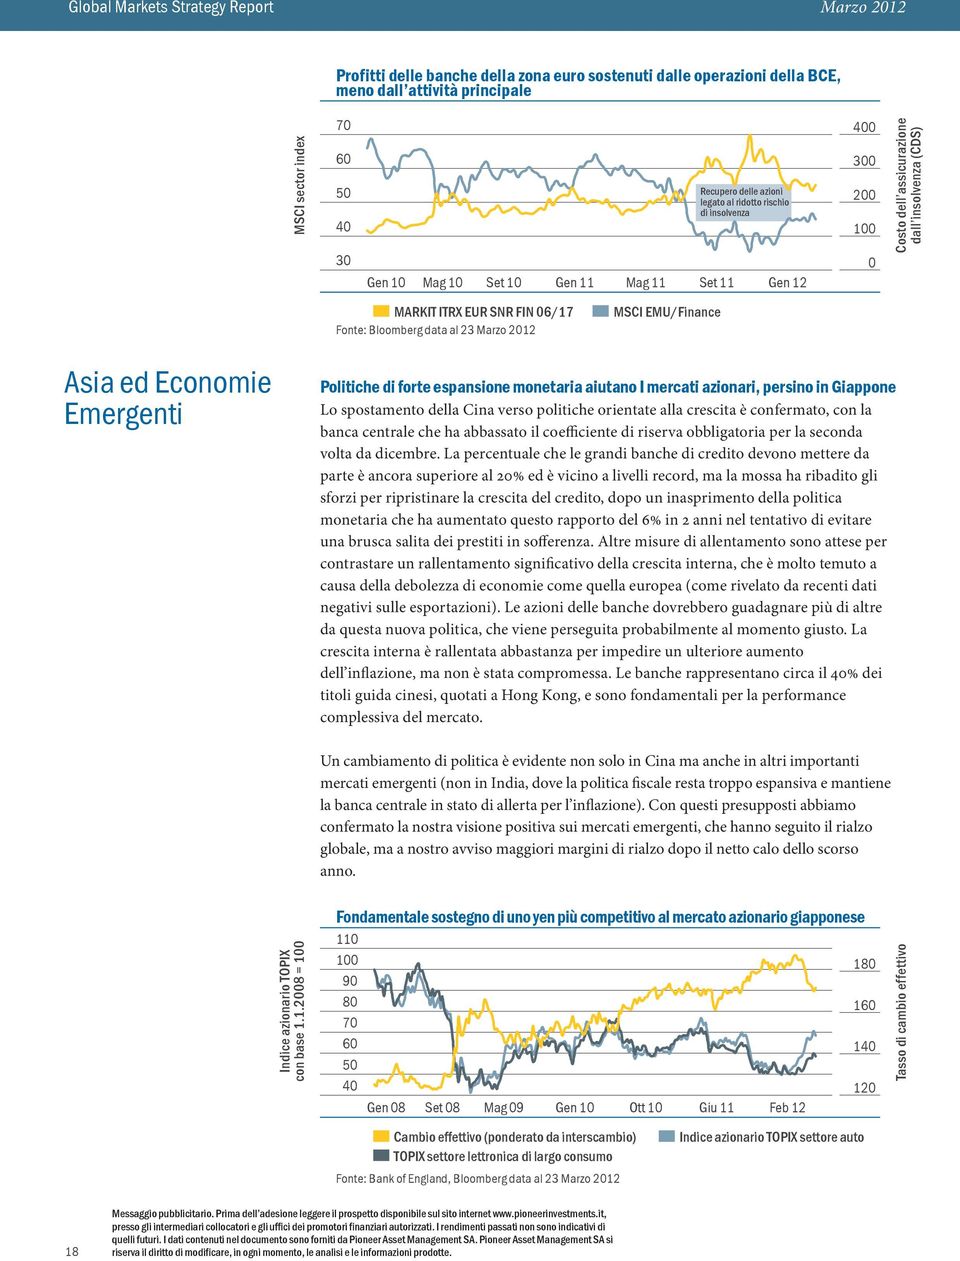 EMU/Finance Asia ed Economie Emergenti Politiche di forte espansione monetaria aiutano I mercati azionari, persino in Giappone Lo spostamento della Cina verso politiche orientate alla crescita è